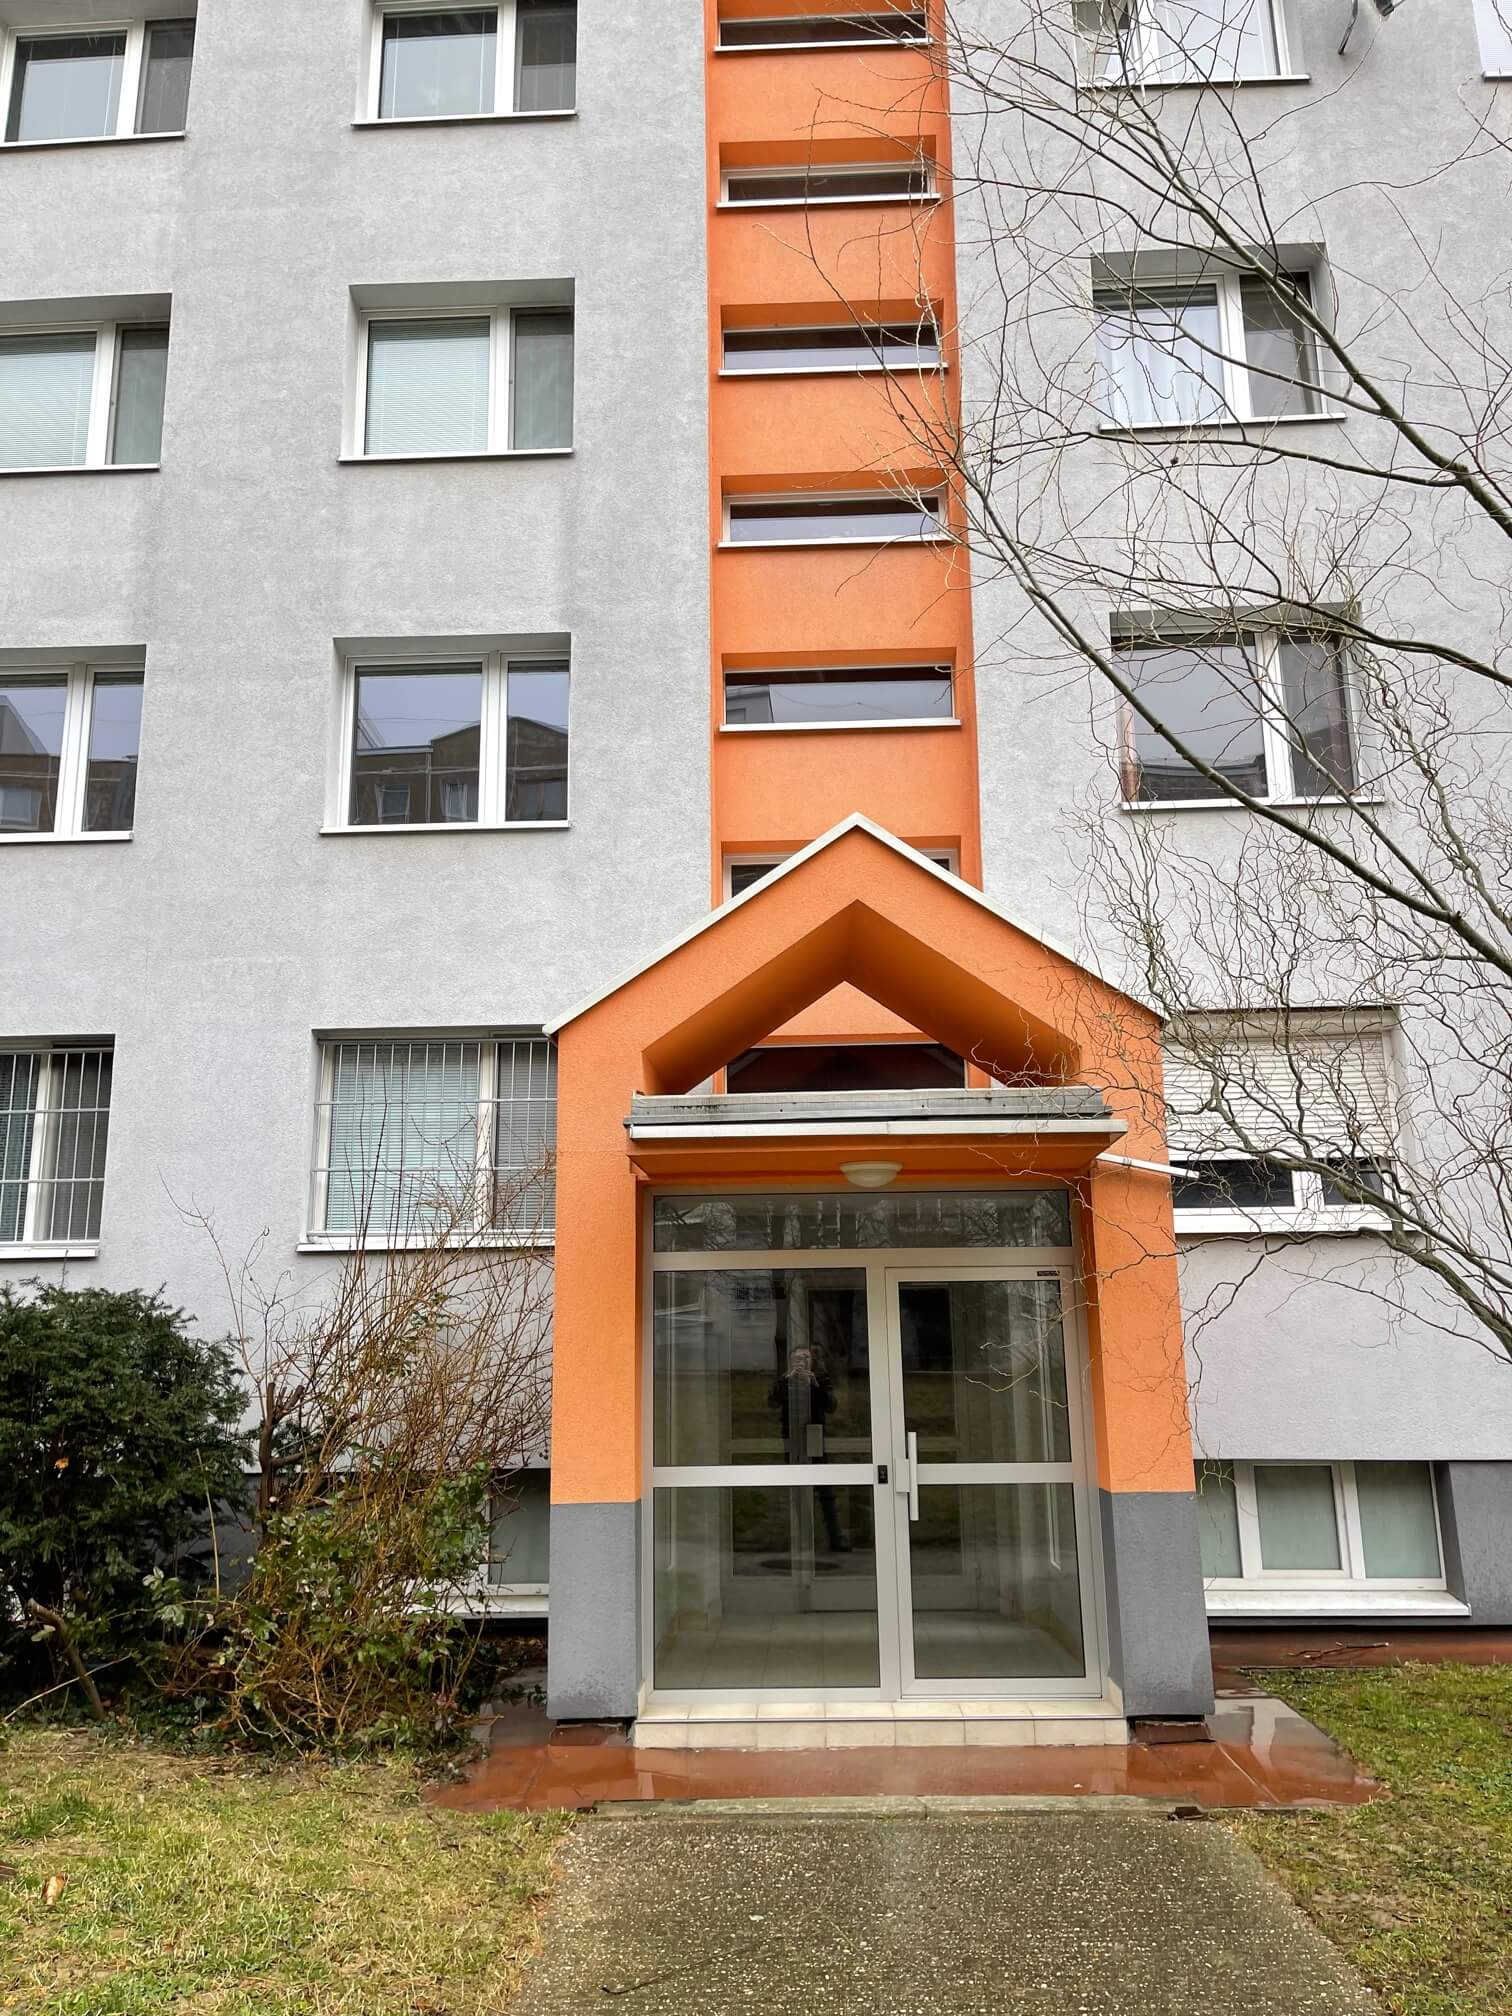 3 izbový byt, 70 m2, 2x balkón, kompletne zrekonštruovaný, Kolísková, Bratislava-14